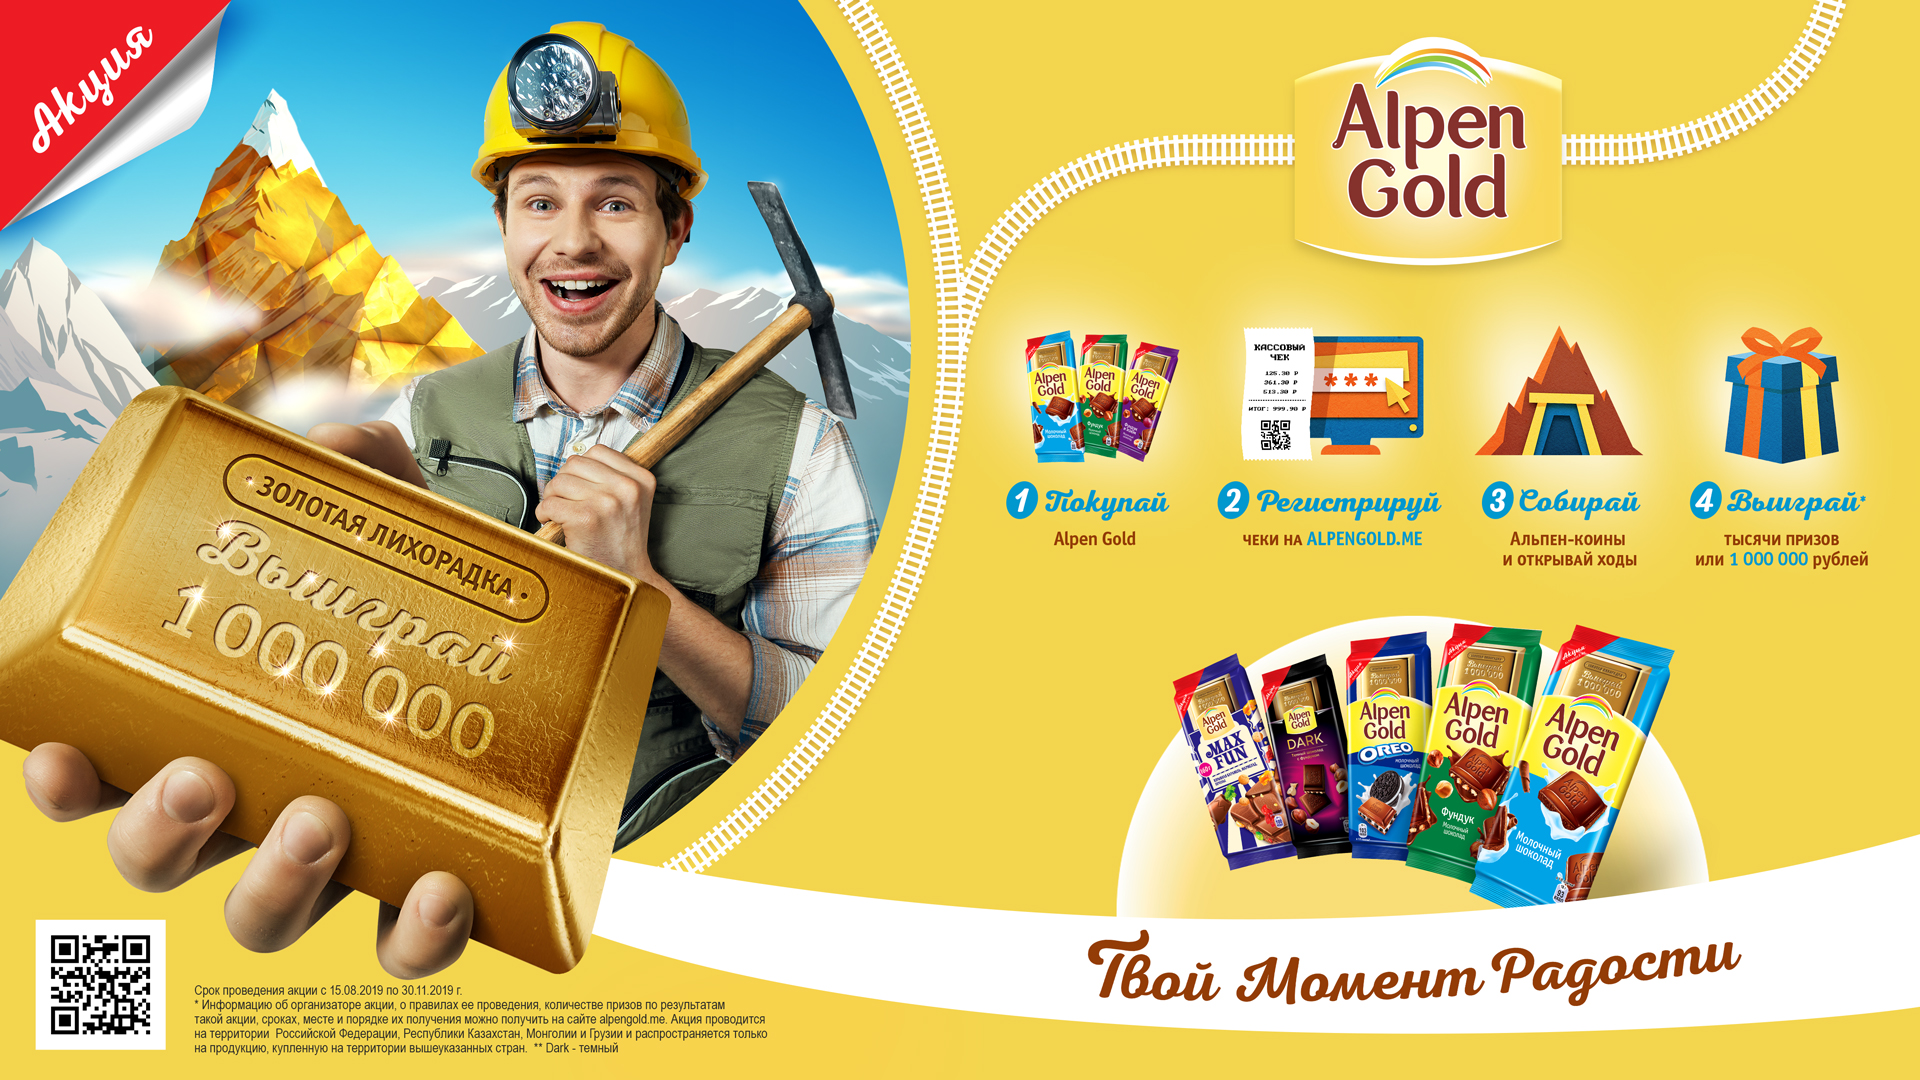 Акция золота 1 1. Золотая лихорадка Альпен Гольд 2019. Альпен Гольд 2009. Акция Alpen Gold «Золотая лихорадка». Alpen Gold реклама.